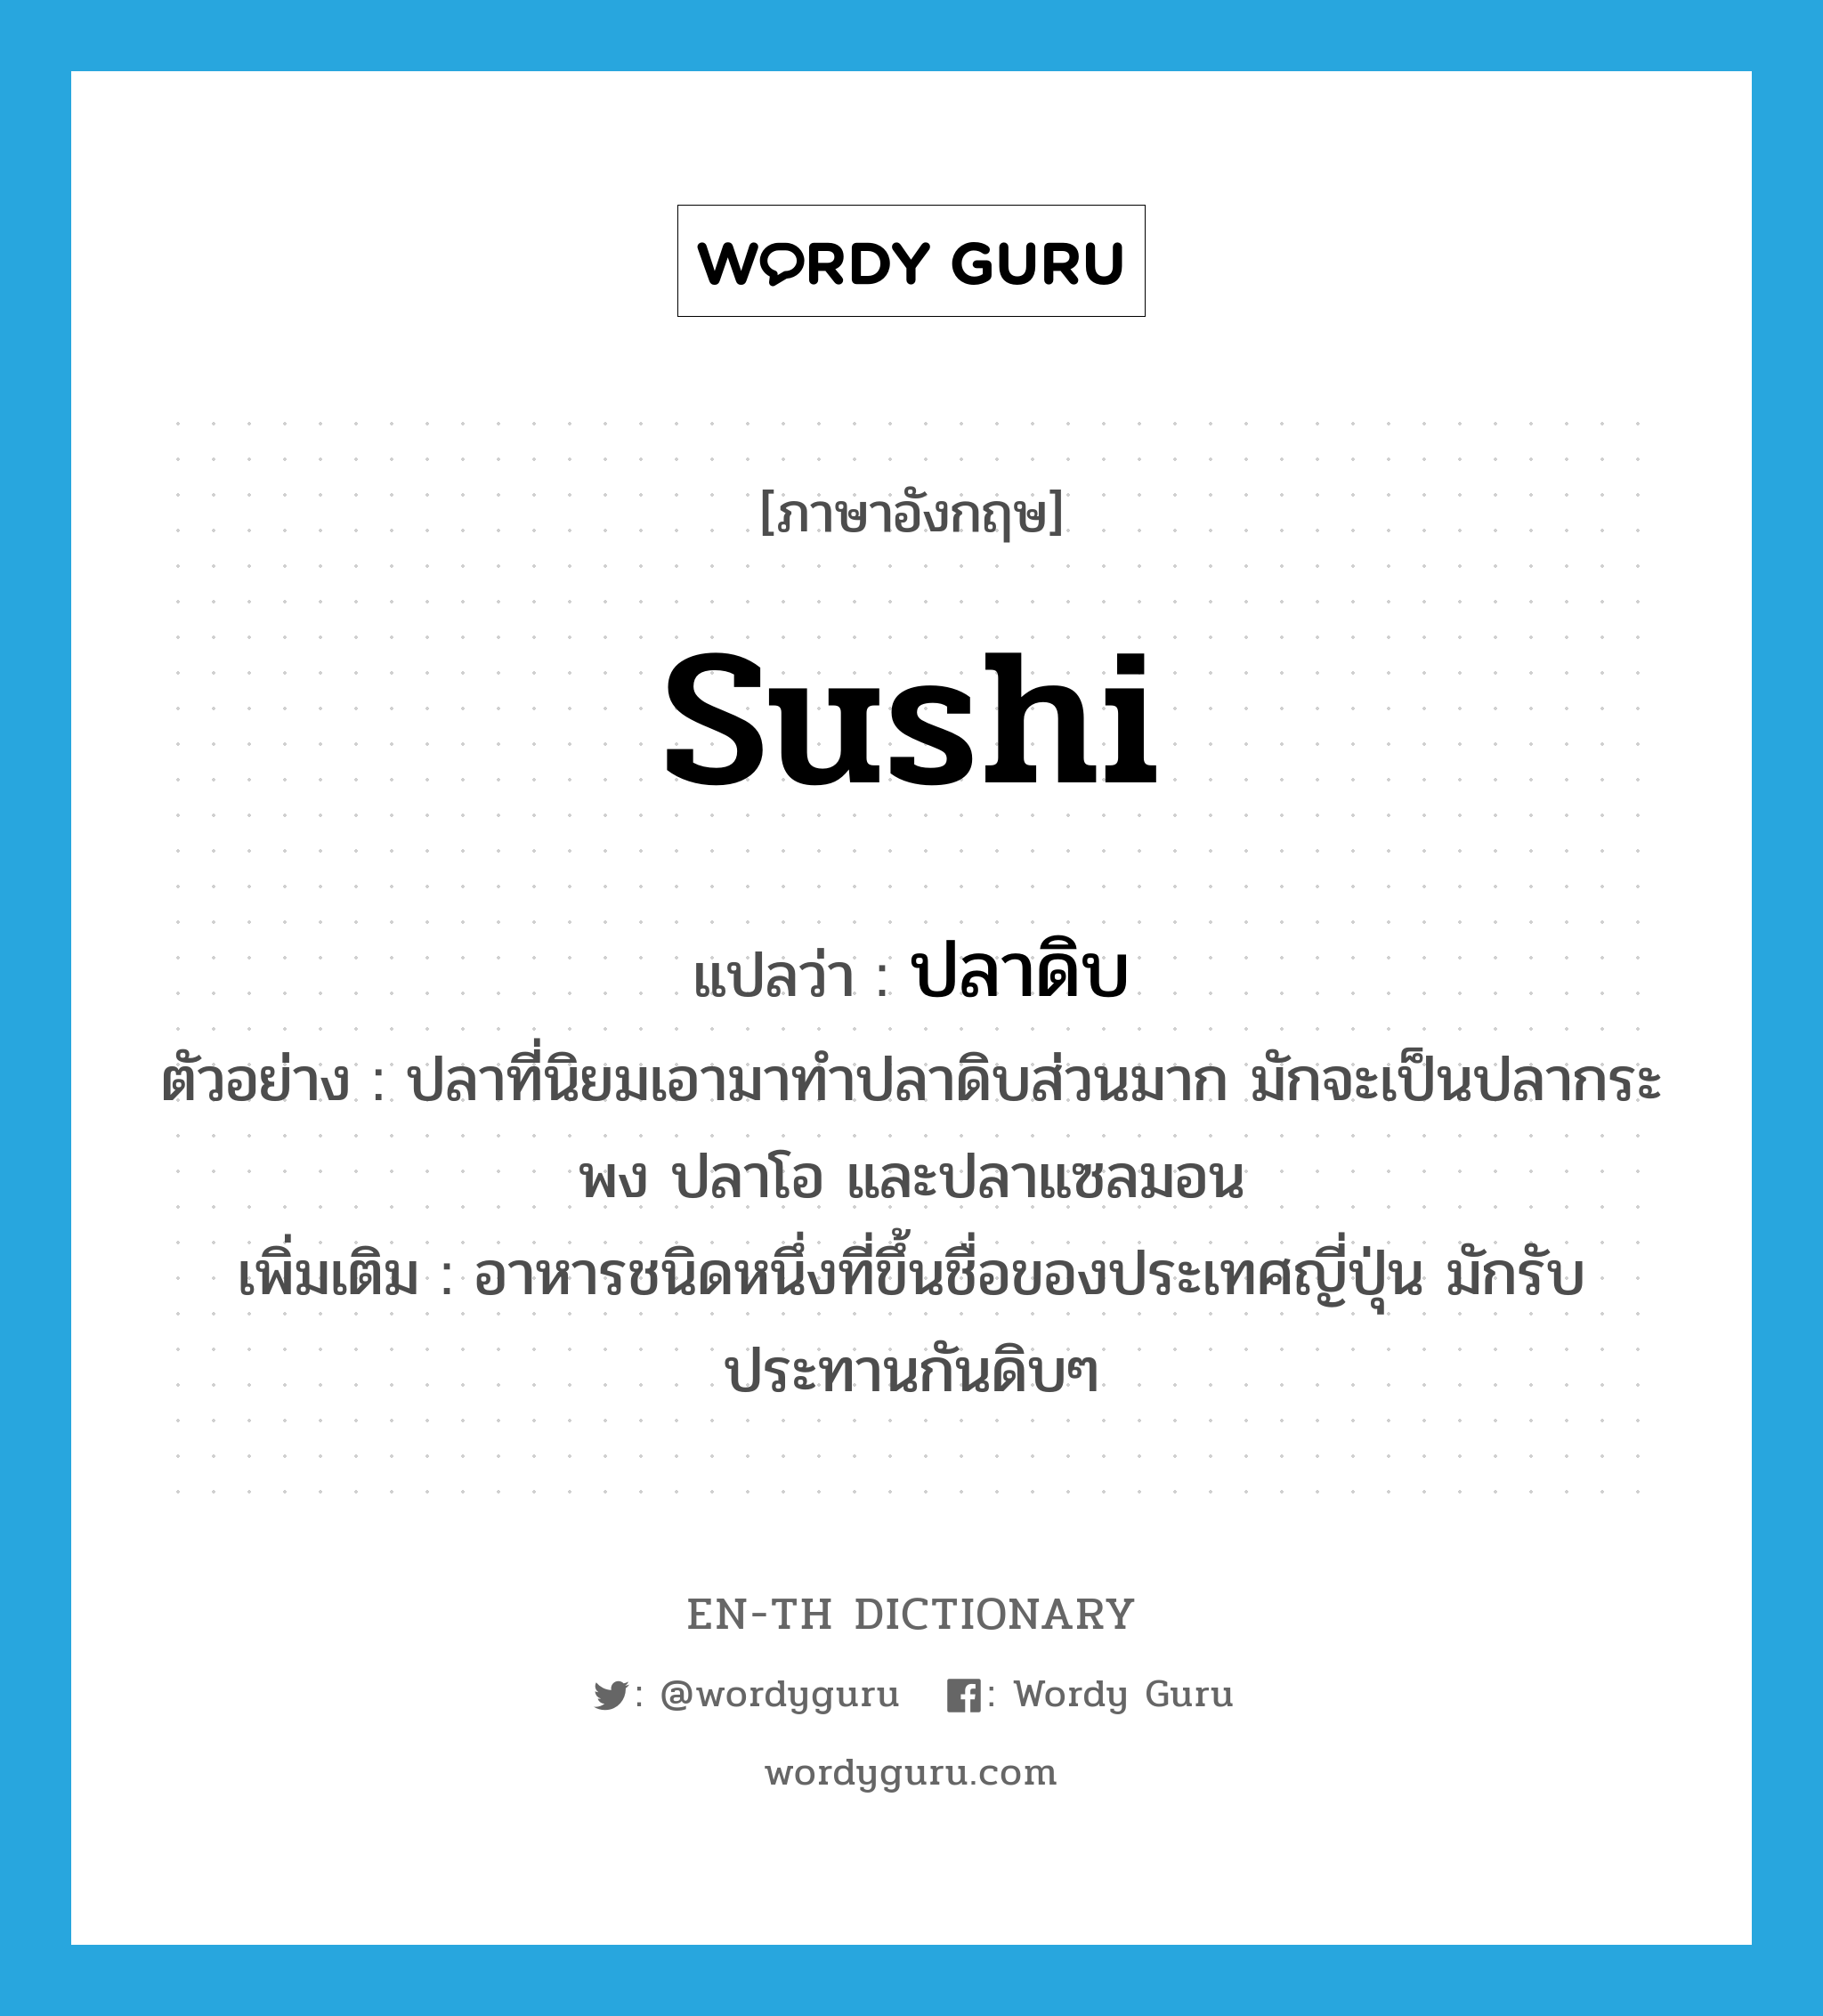 sushi แปลว่า?, คำศัพท์ภาษาอังกฤษ sushi แปลว่า ปลาดิบ ประเภท N ตัวอย่าง ปลาที่นิยมเอามาทำปลาดิบส่วนมาก มักจะเป็นปลากระพง ปลาโอ และปลาแซลมอน เพิ่มเติม อาหารชนิดหนึ่งที่ขึ้นชื่อของประเทศญี่ปุ่น มักรับประทานกันดิบๆ หมวด N